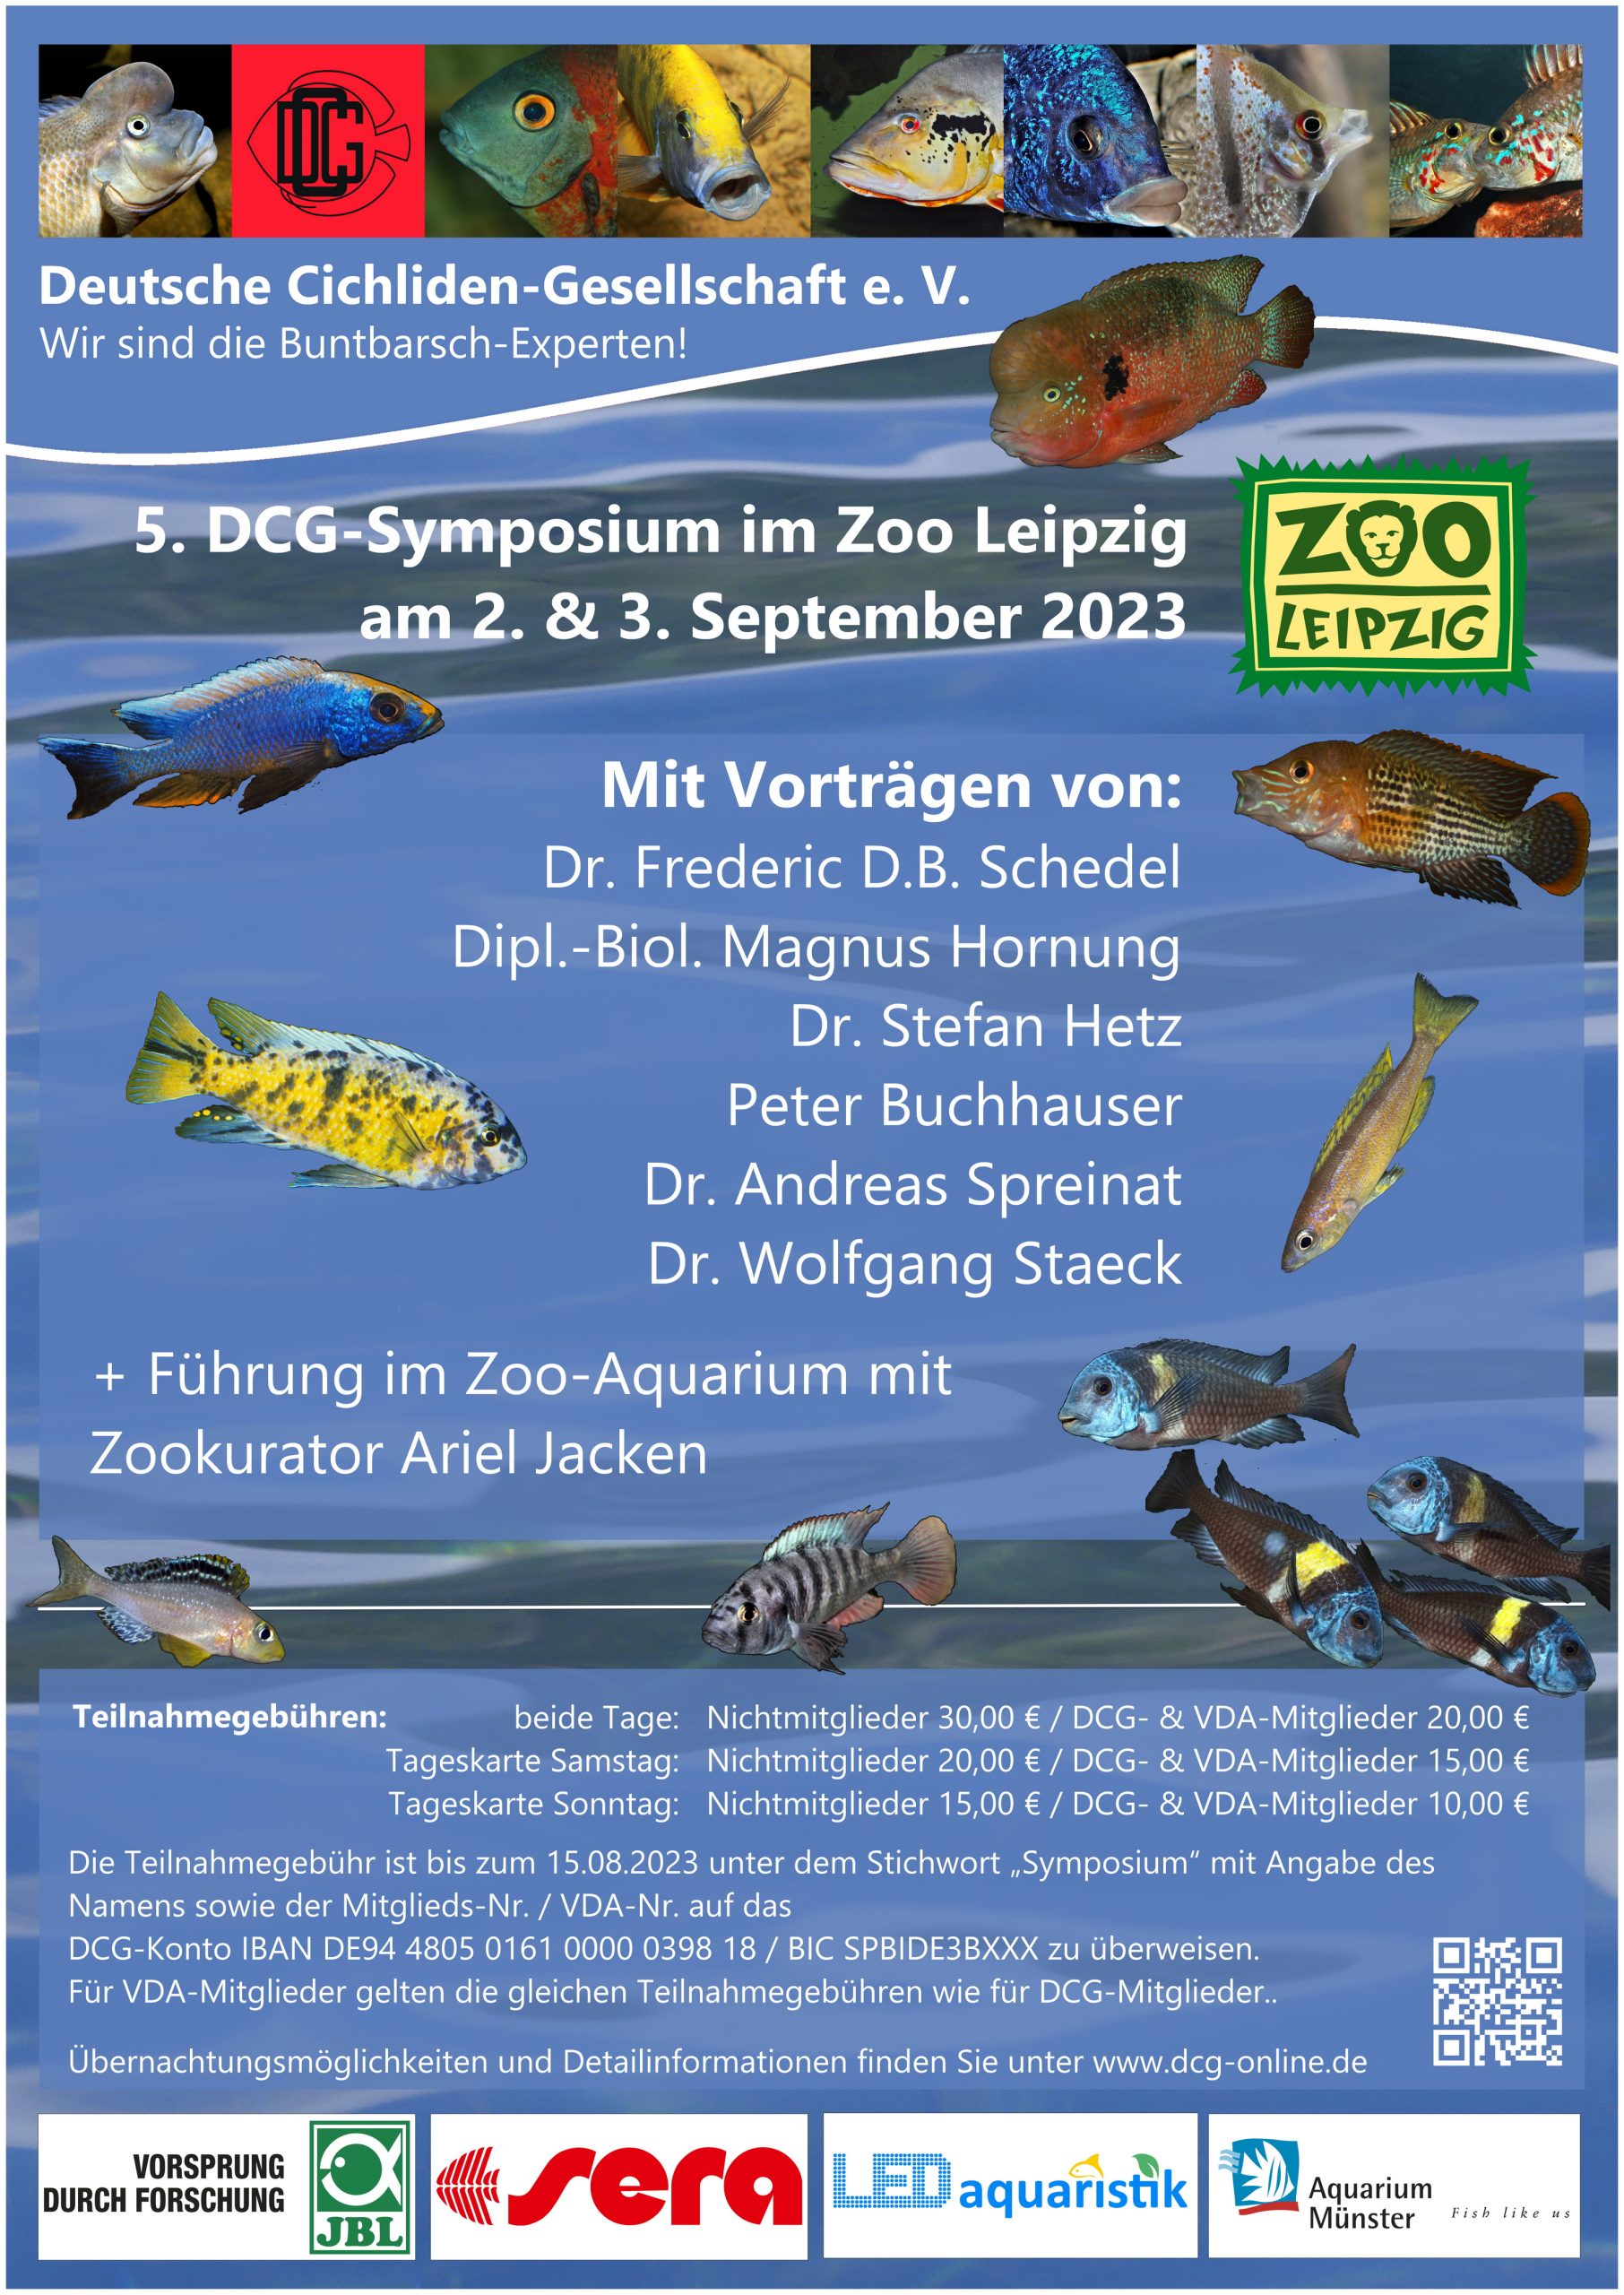 Druckversion für Zeitung Symposium Leipzig 02 09 2023 Poster Referenten A0 ueberarbeitet 230329